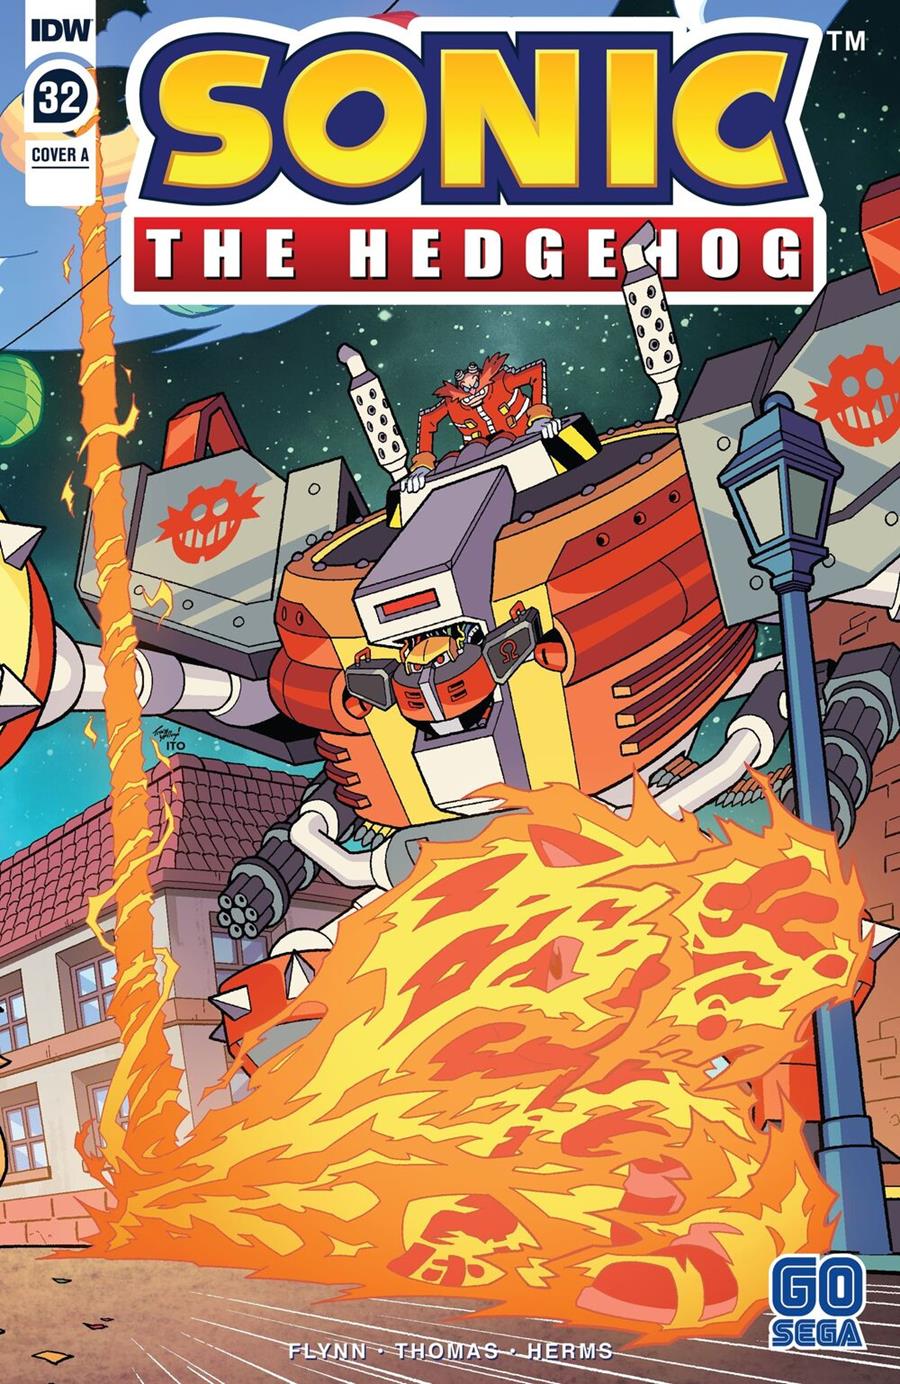 Sonic The Hedgehog núm. 32 | N0322-ECC59 | Adam Bryce Thomas / Ian Flynn | Terra de Còmic - Tu tienda de cómics online especializada en cómics, manga y merchandising